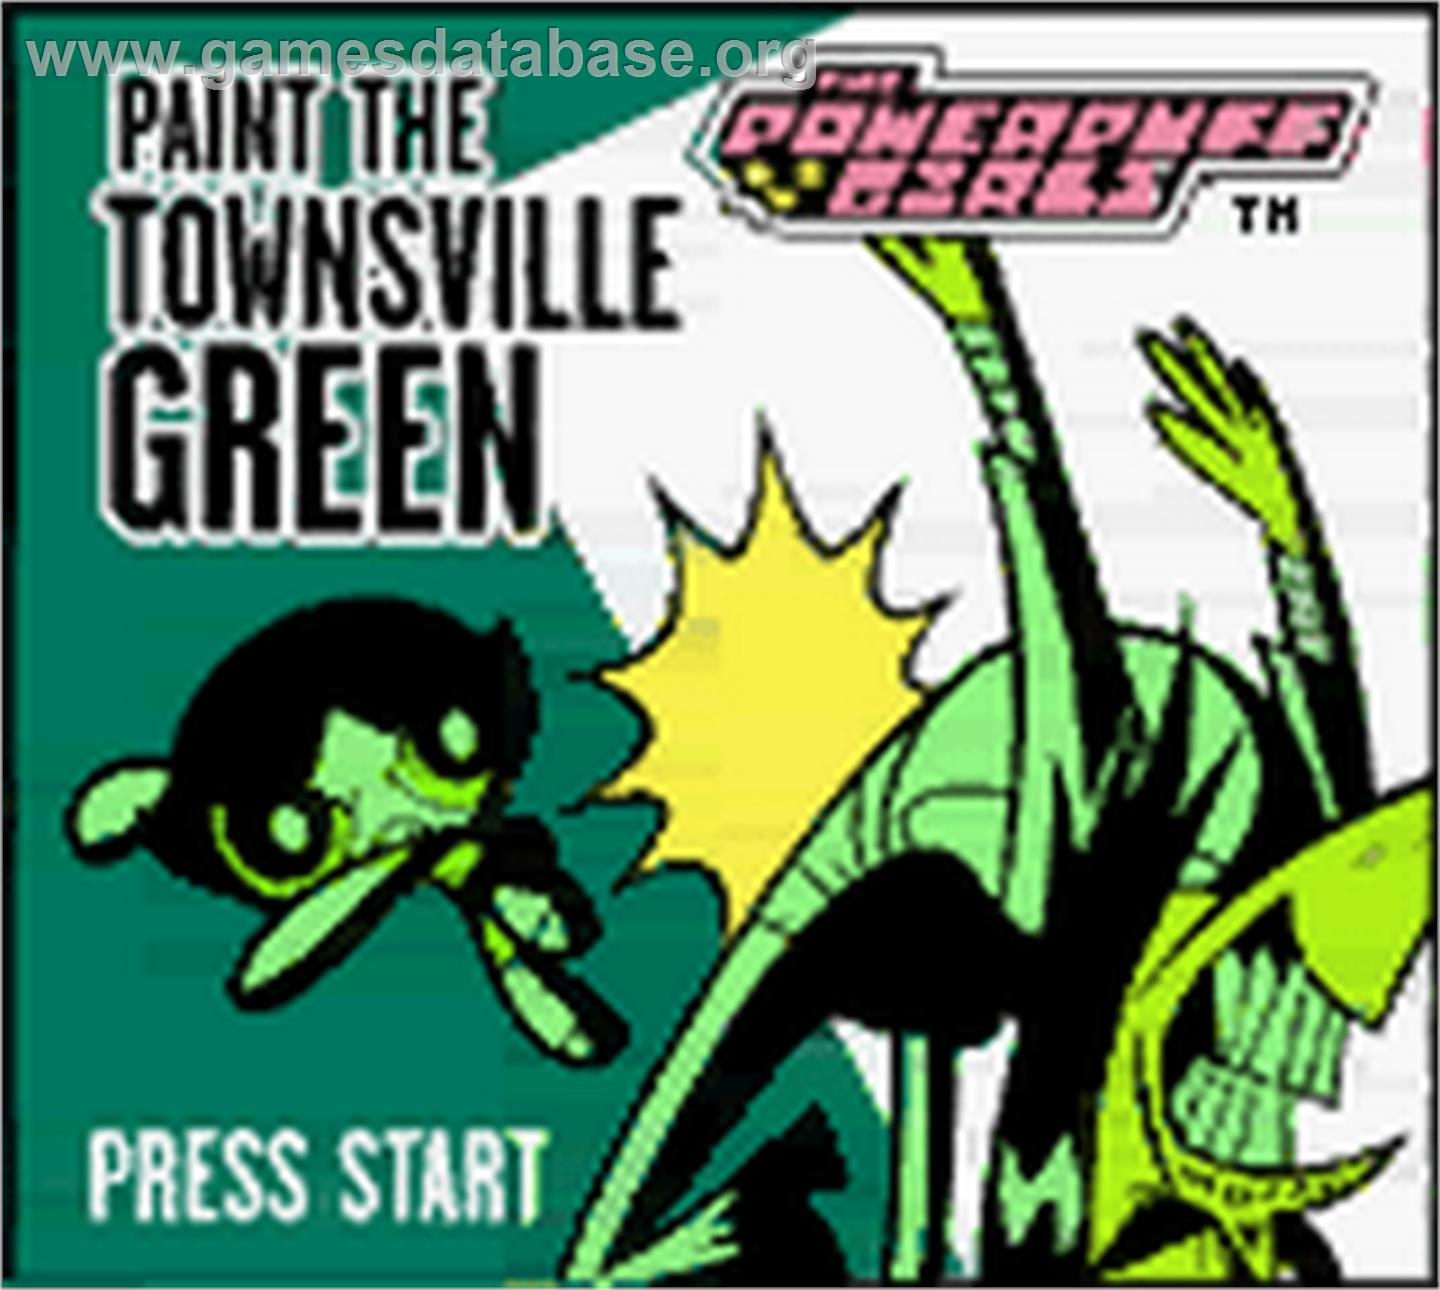 Powerpuff Girls: Paint the Townsville Green - Nintendo Game Boy Color - Artwork - Title Screen